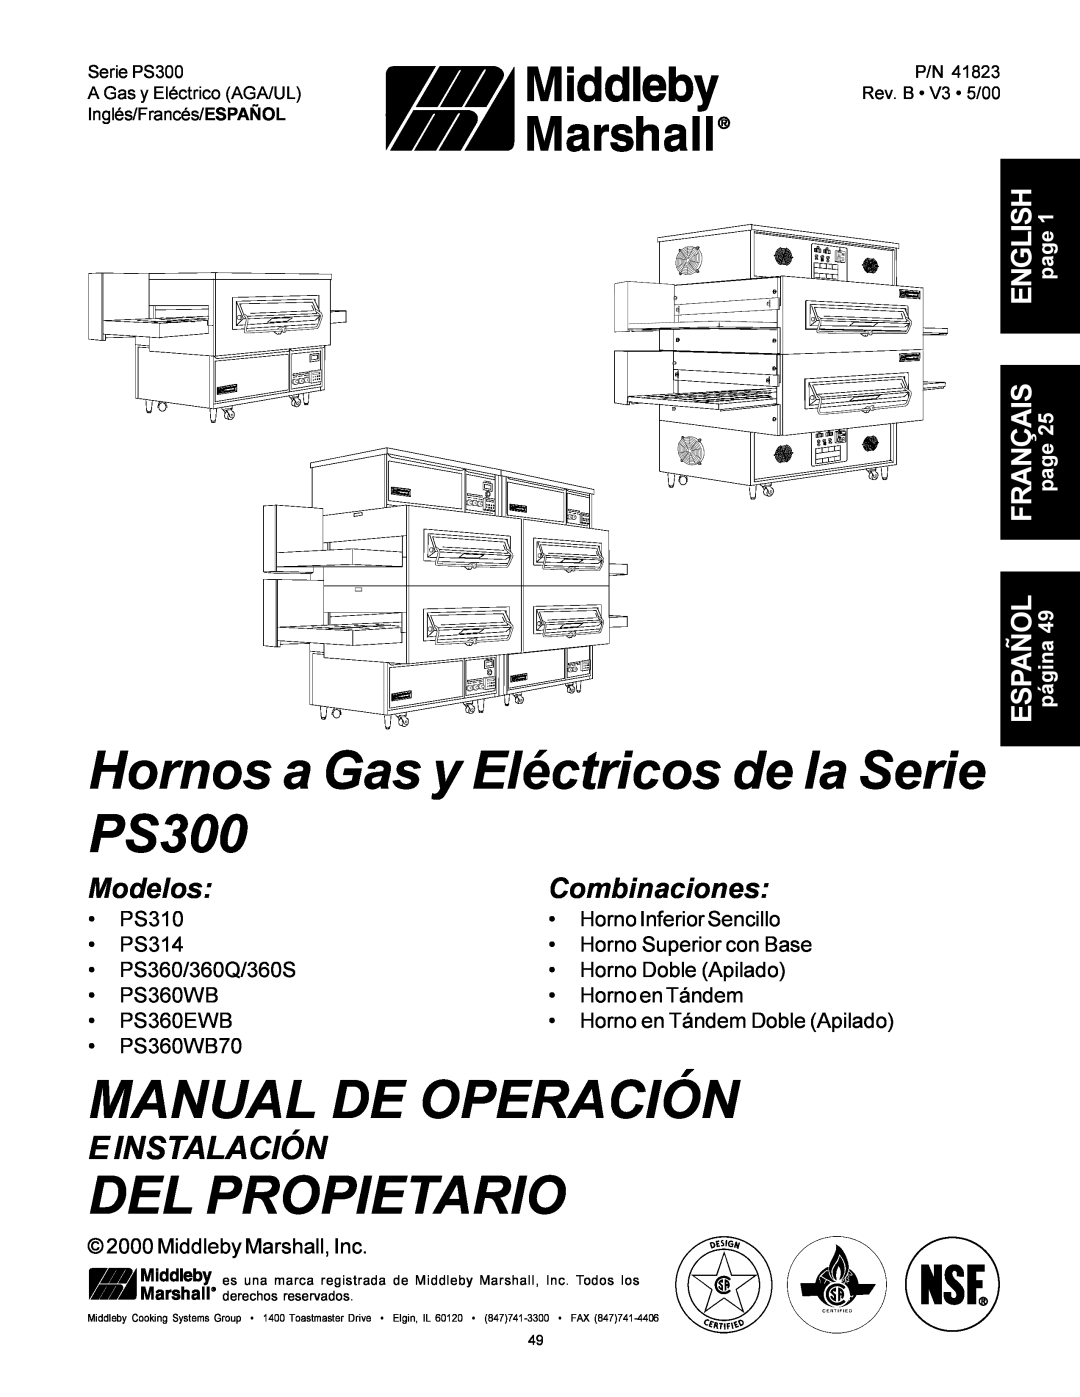 Middleby Marshall PS360 Hornos a Gas y Eléctricos de la Serie PS300, Manual De Operación, Del Propietario, E Instalación 